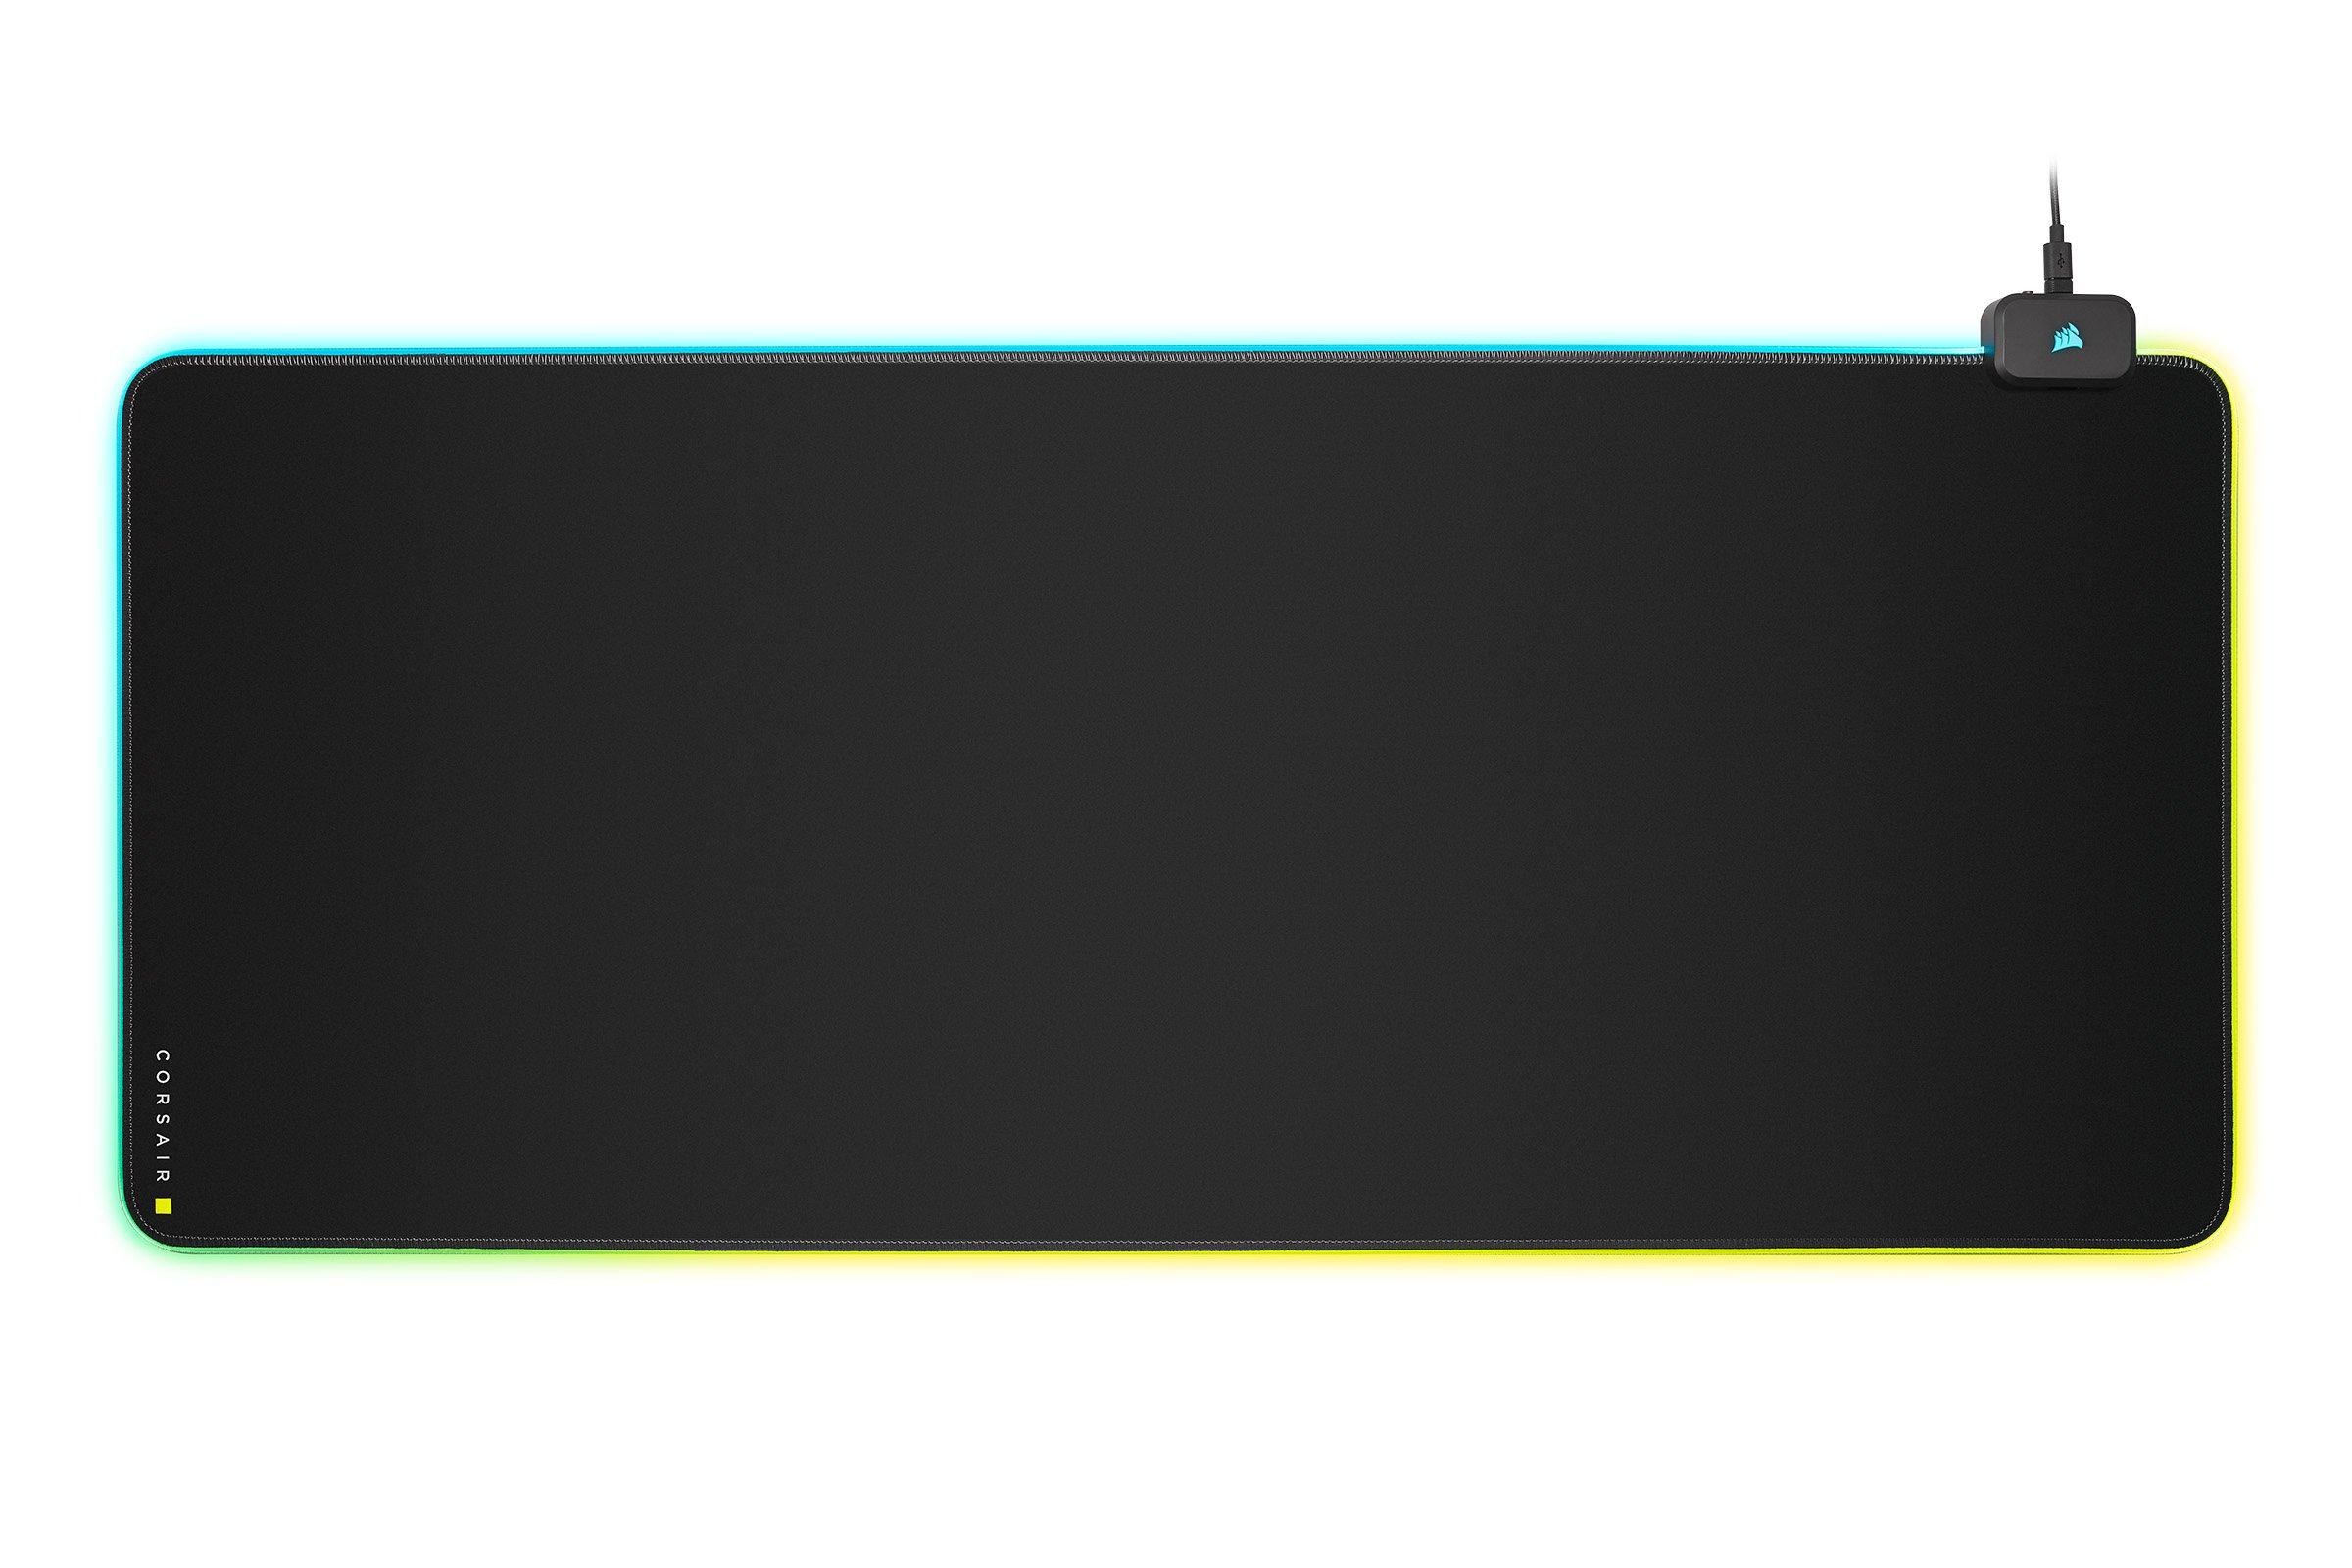 Soak opdragelse skræmt CORSAIR MM700 RGB Extended Gaming Mouse Pad | GameStop